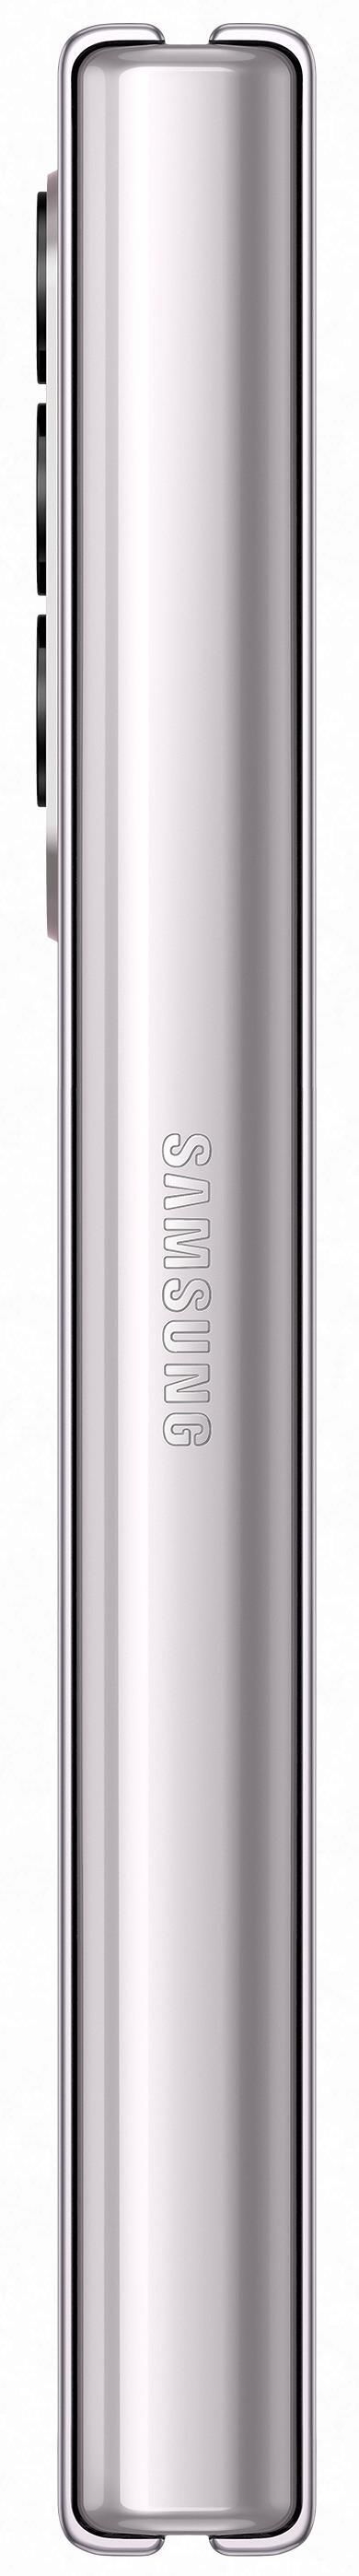 Samsung Galaxy Z Fold 3 5G / Foldable 7.6'' + 6.2'' Dynamic AMOLED 120Hz / Snapdragon 888 / 12GB / 512GB / 4400mAh /